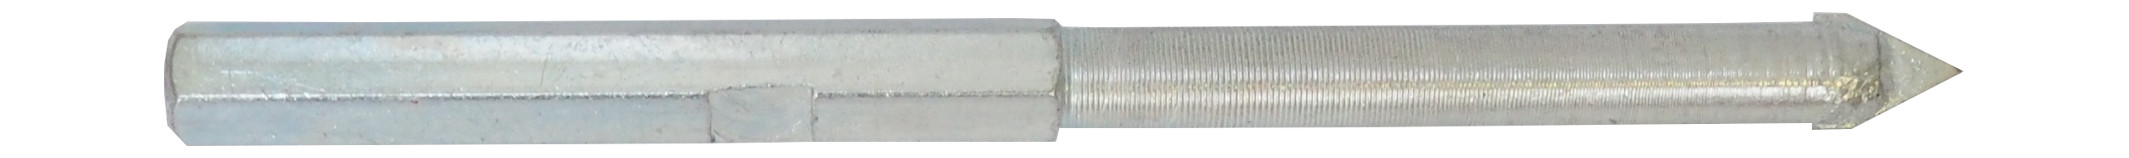 REFLEX vrták vodící, pro vykružovací korunky s karbidovými zrny, 33 - 103 mm 0.07 Kg TOP Sklad4 501807 425